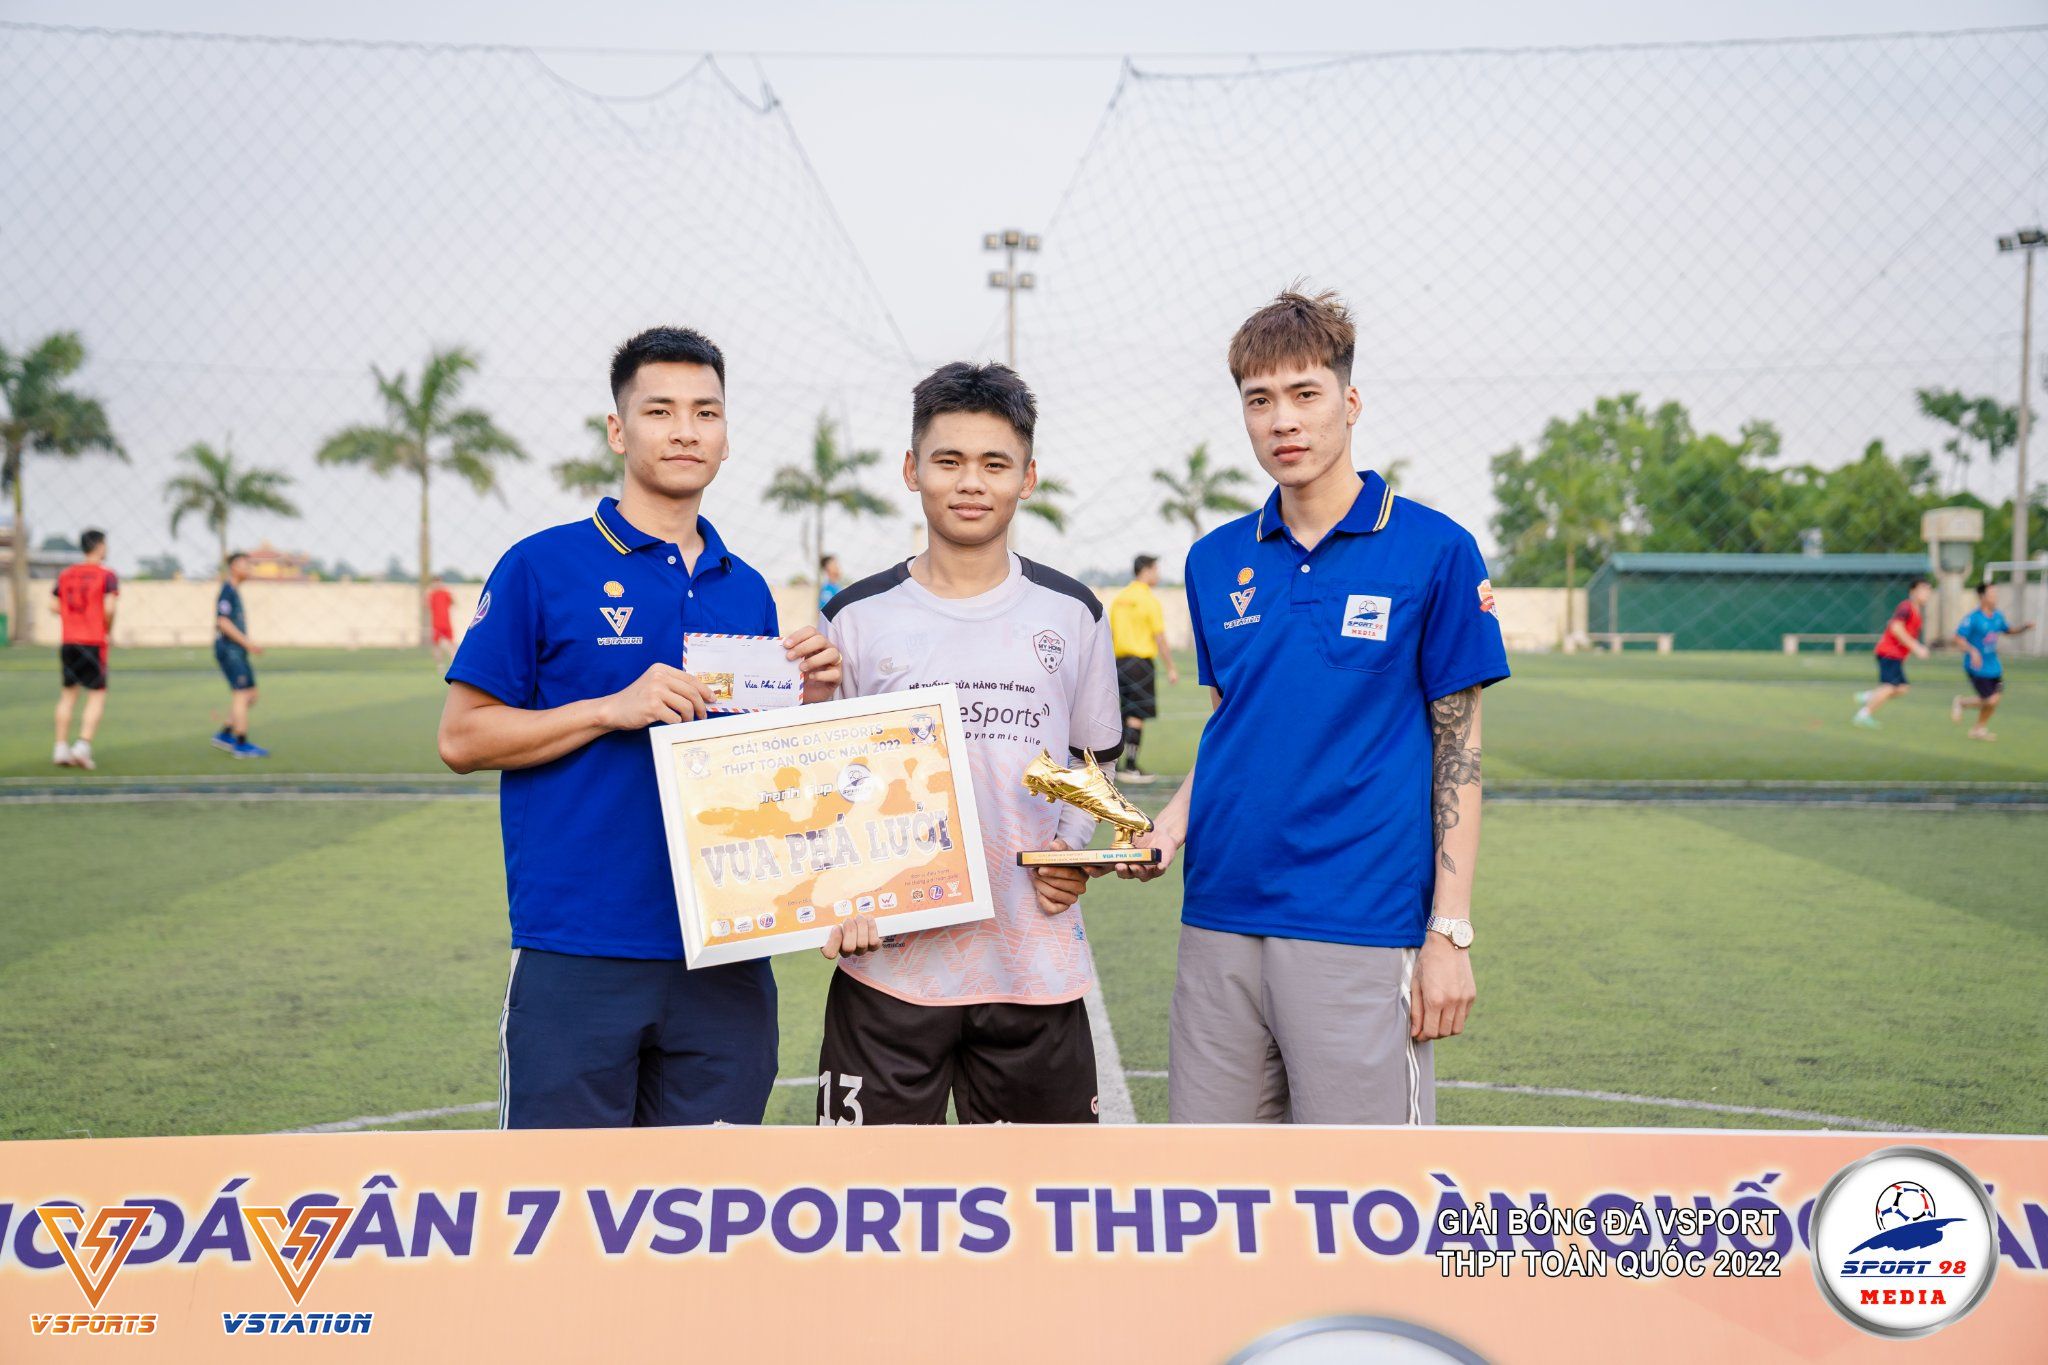 Vsports THPT khu vực Thái Bình